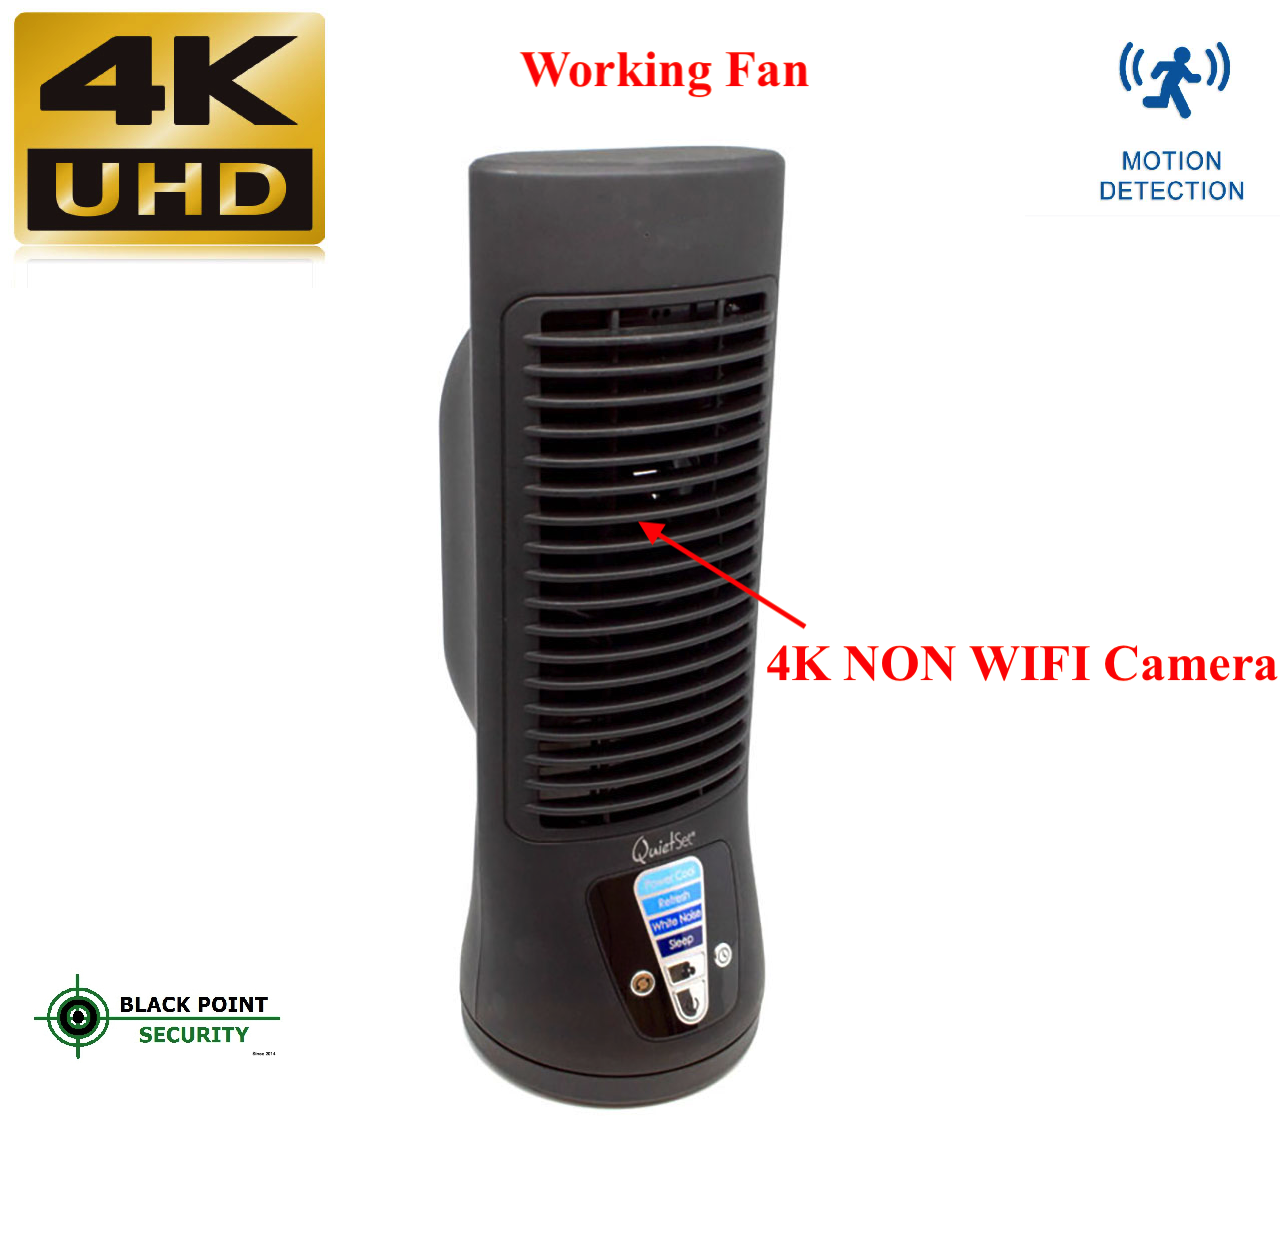 4k-non-wifi-hidden-camera-fan.png